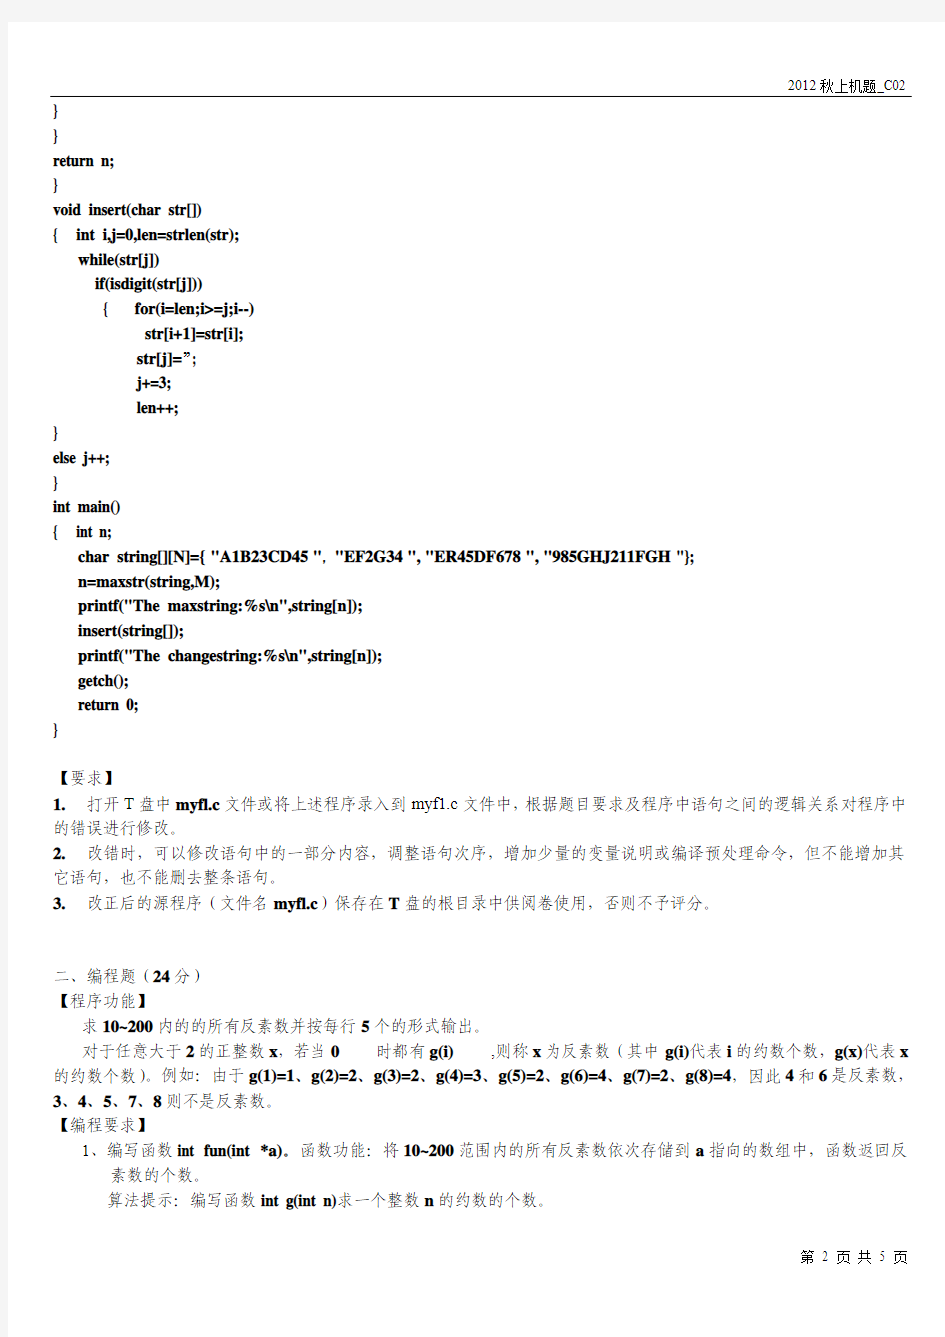 2012年10月14日江苏省高校计算机等级考试二级C语言上机题(C02)及其解答_张柏雄